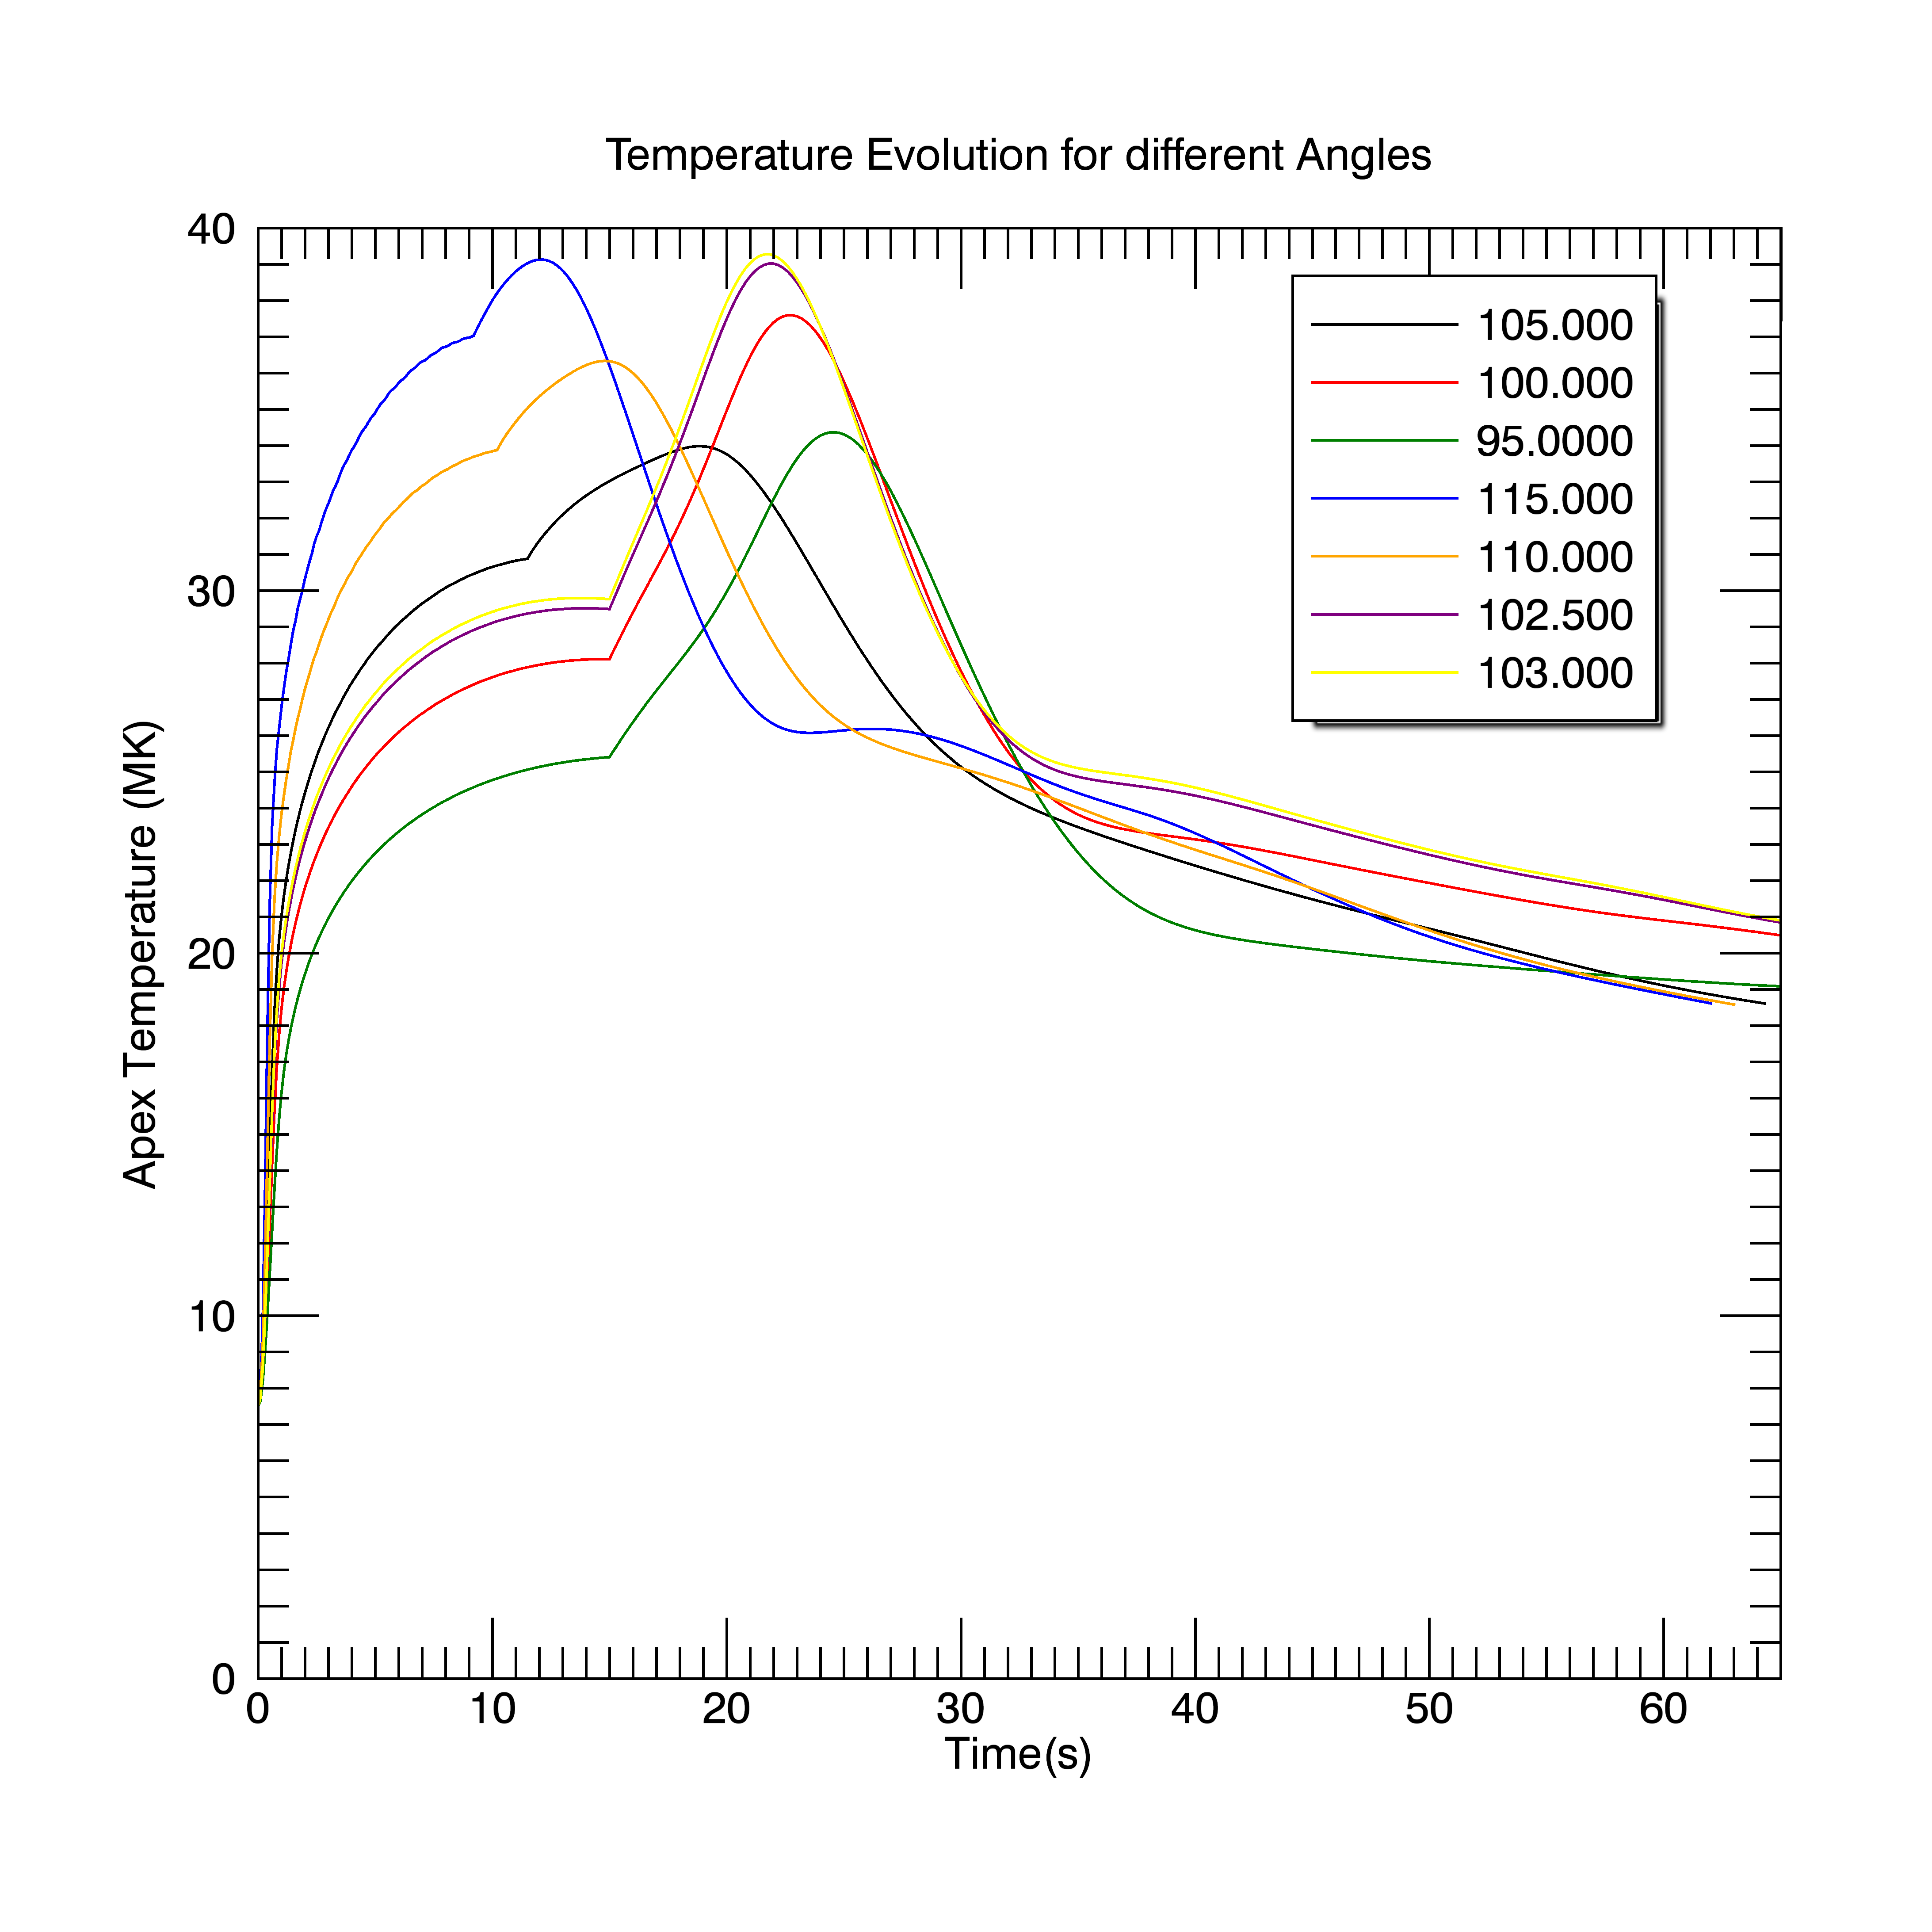 Temperature Anomaly